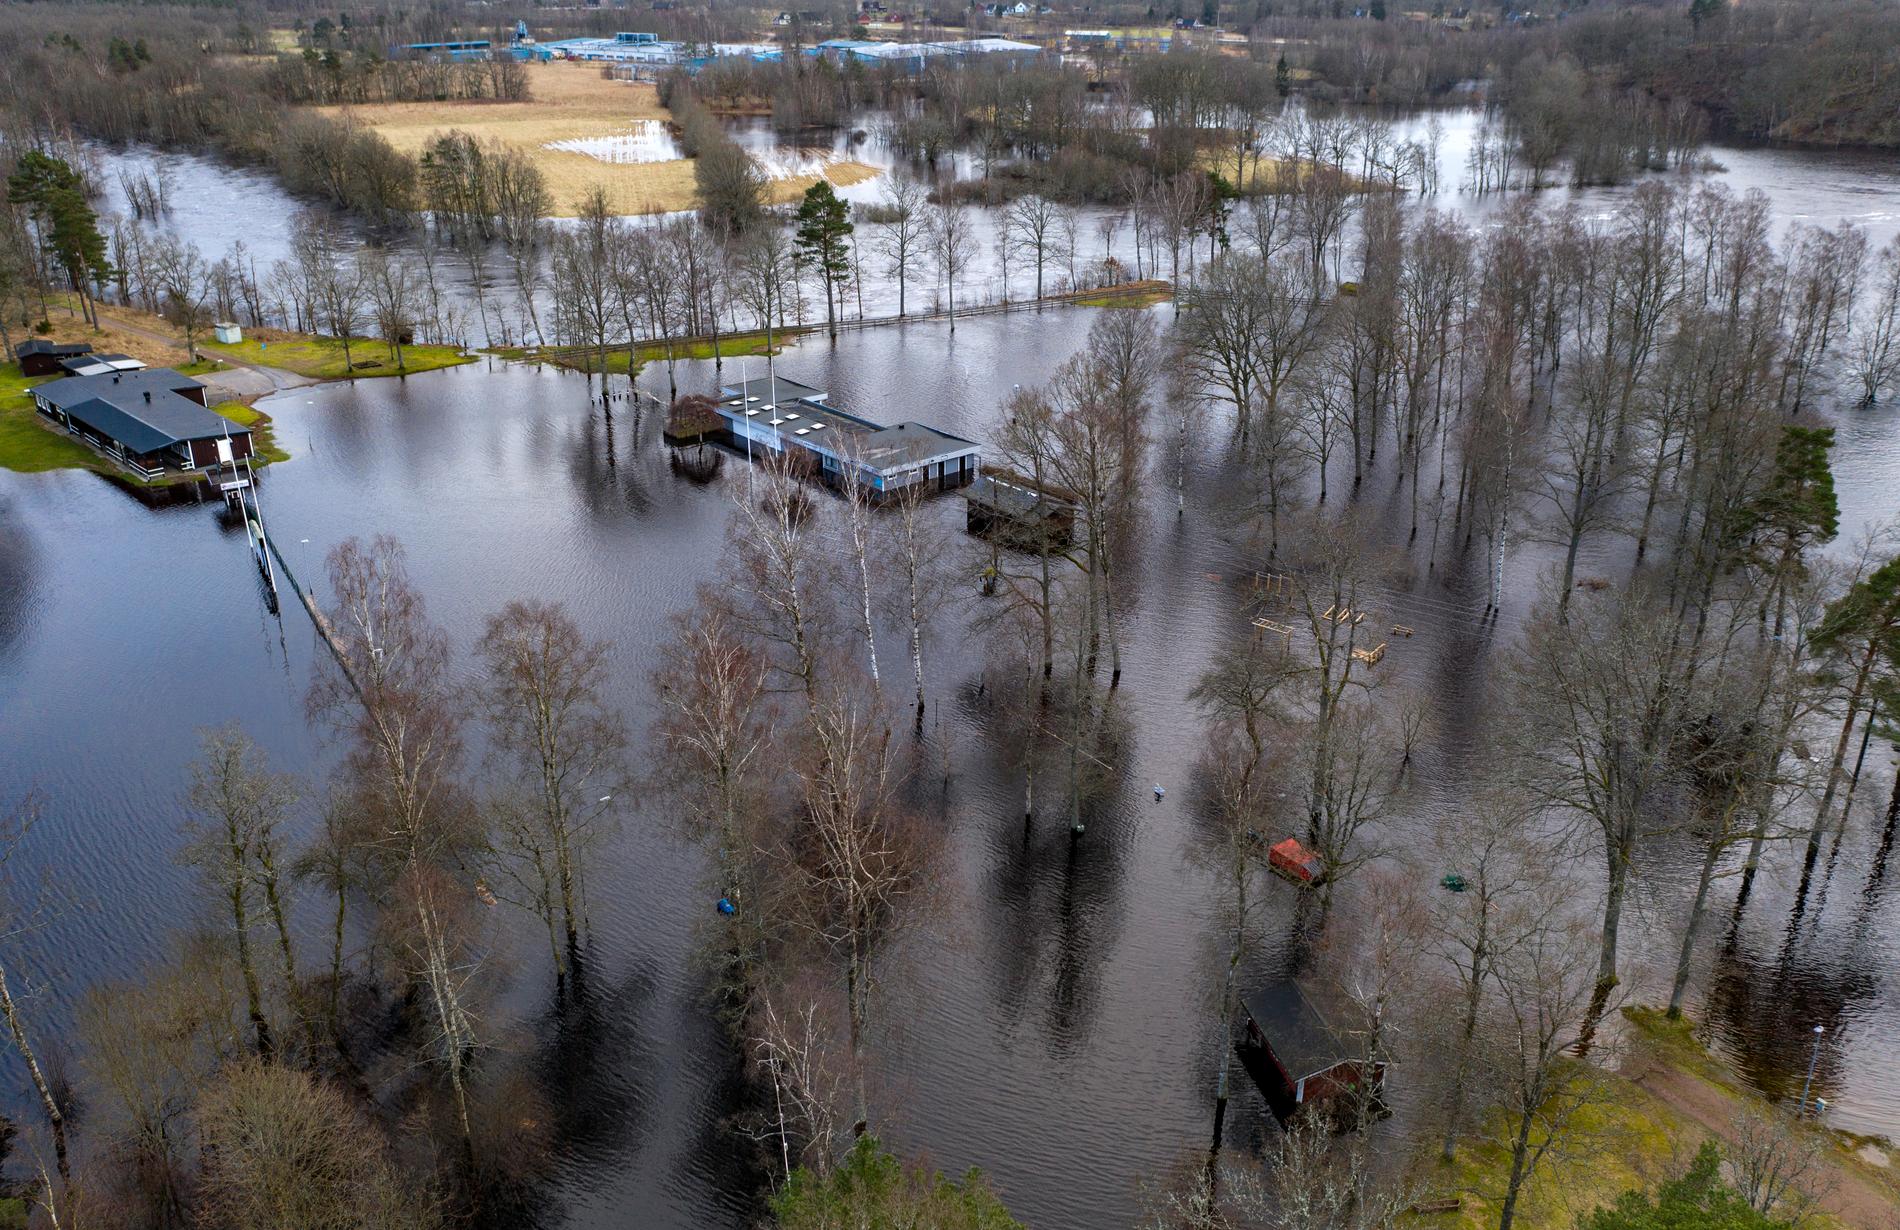 Lagan svämmar över sina breddar och byggnaderna står under vatten i Knäred. Översvämningsrisken längs Nissan och Lagan är stor.